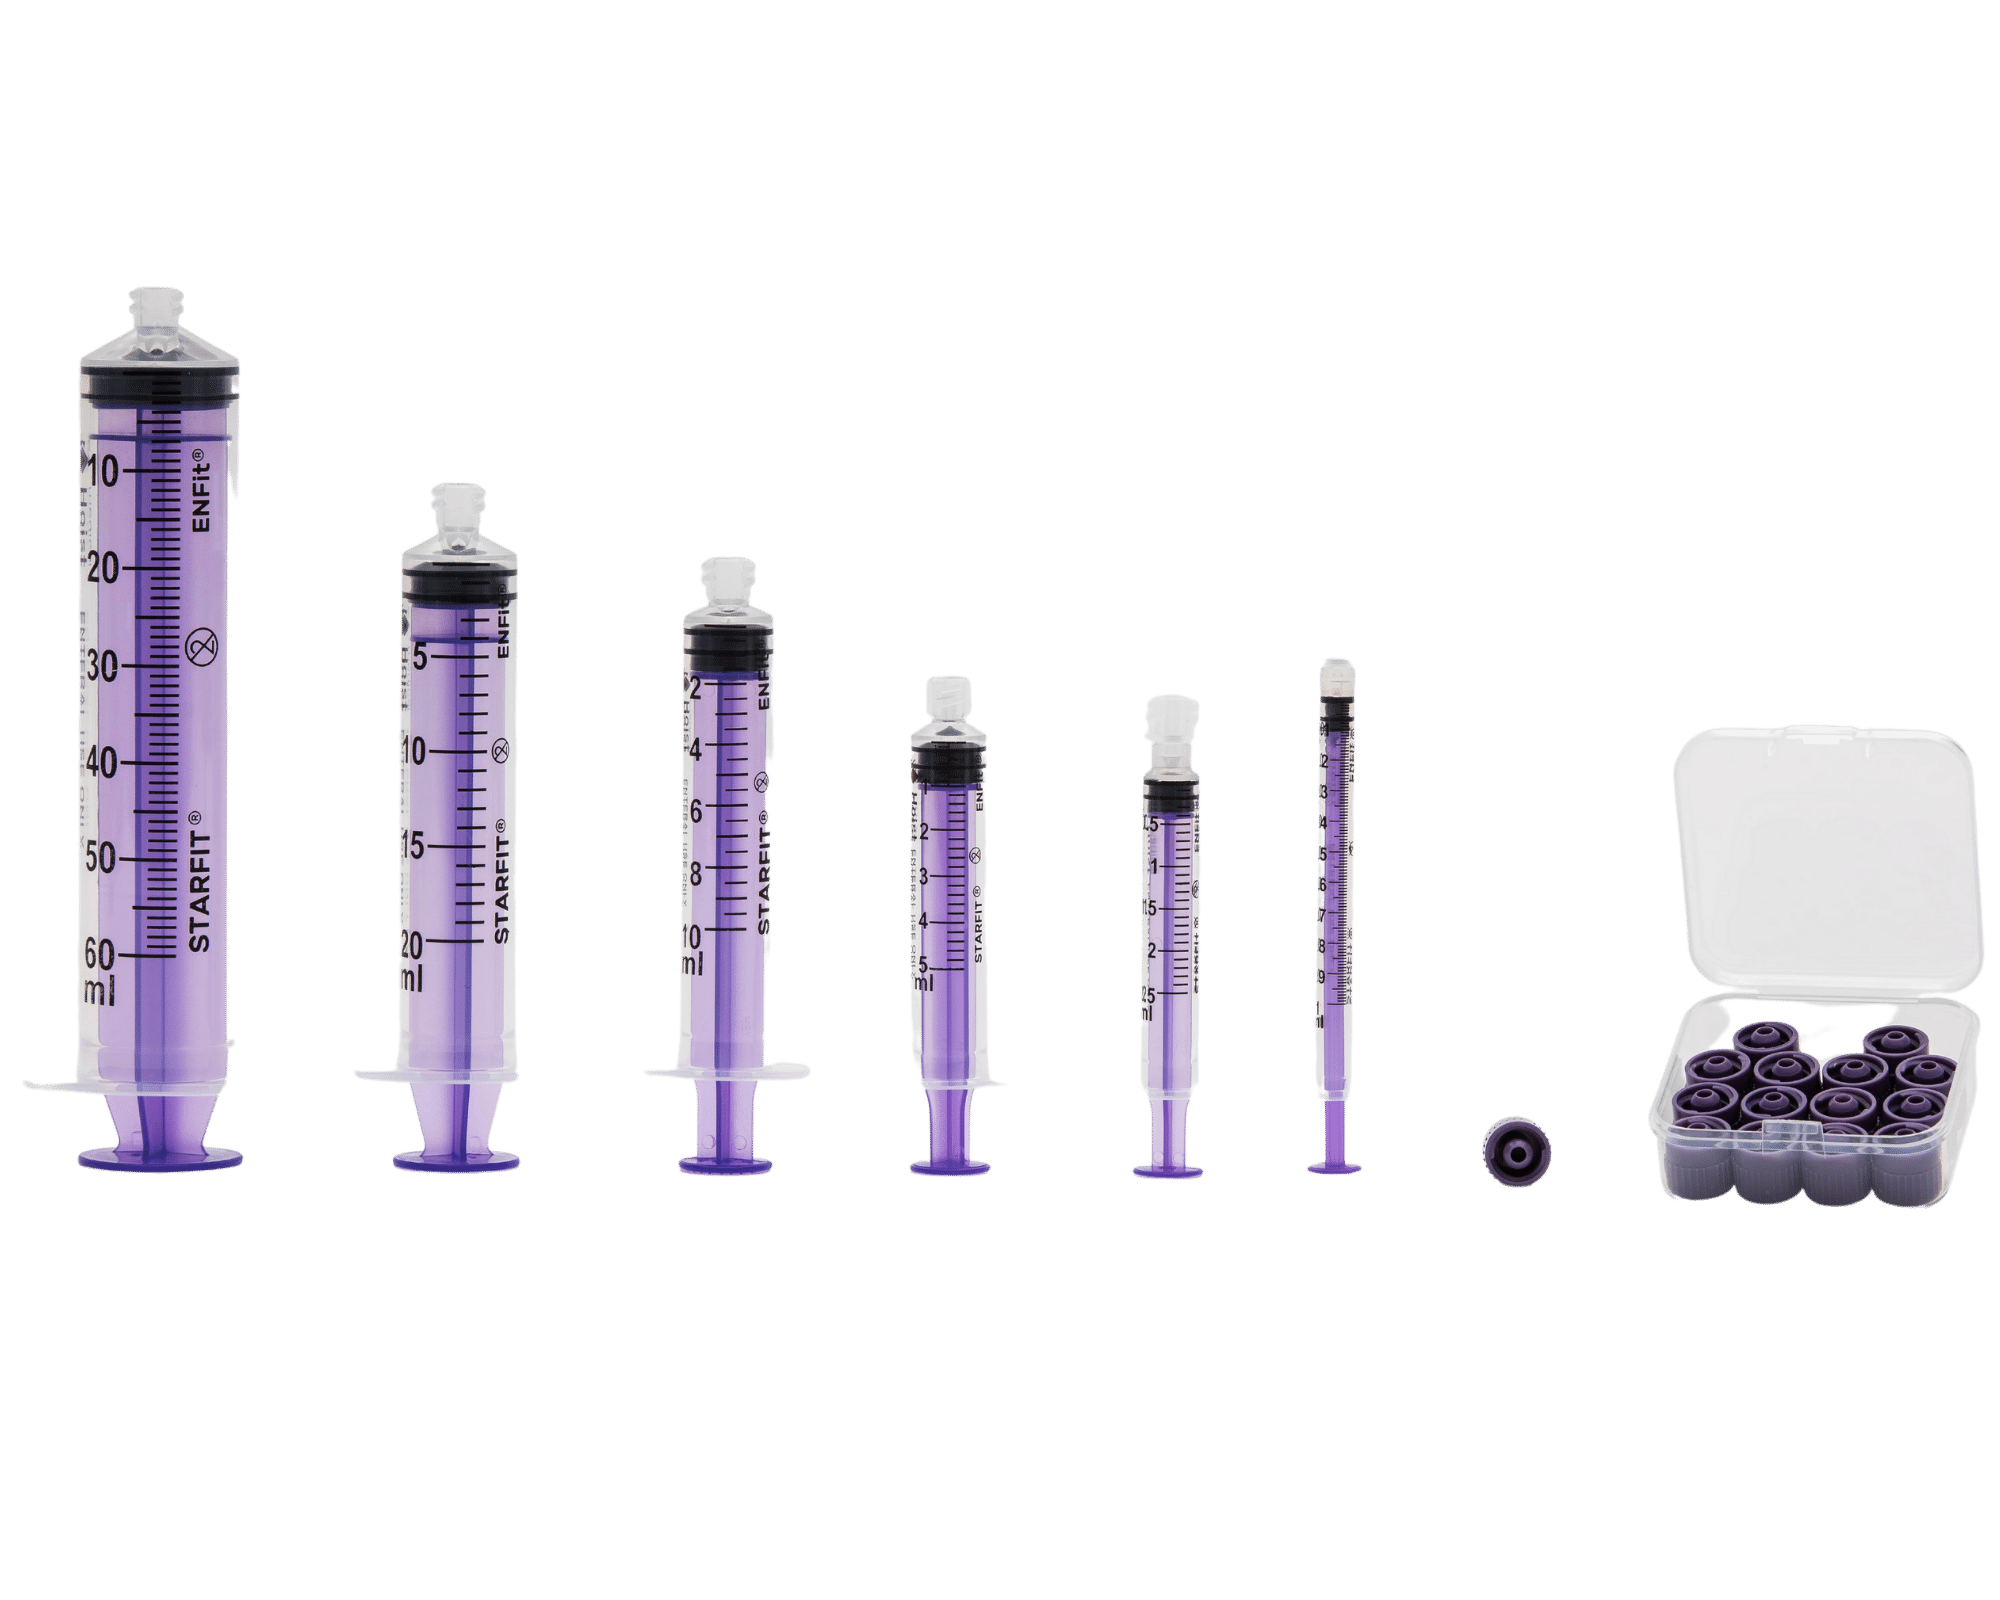 Enteral syringe